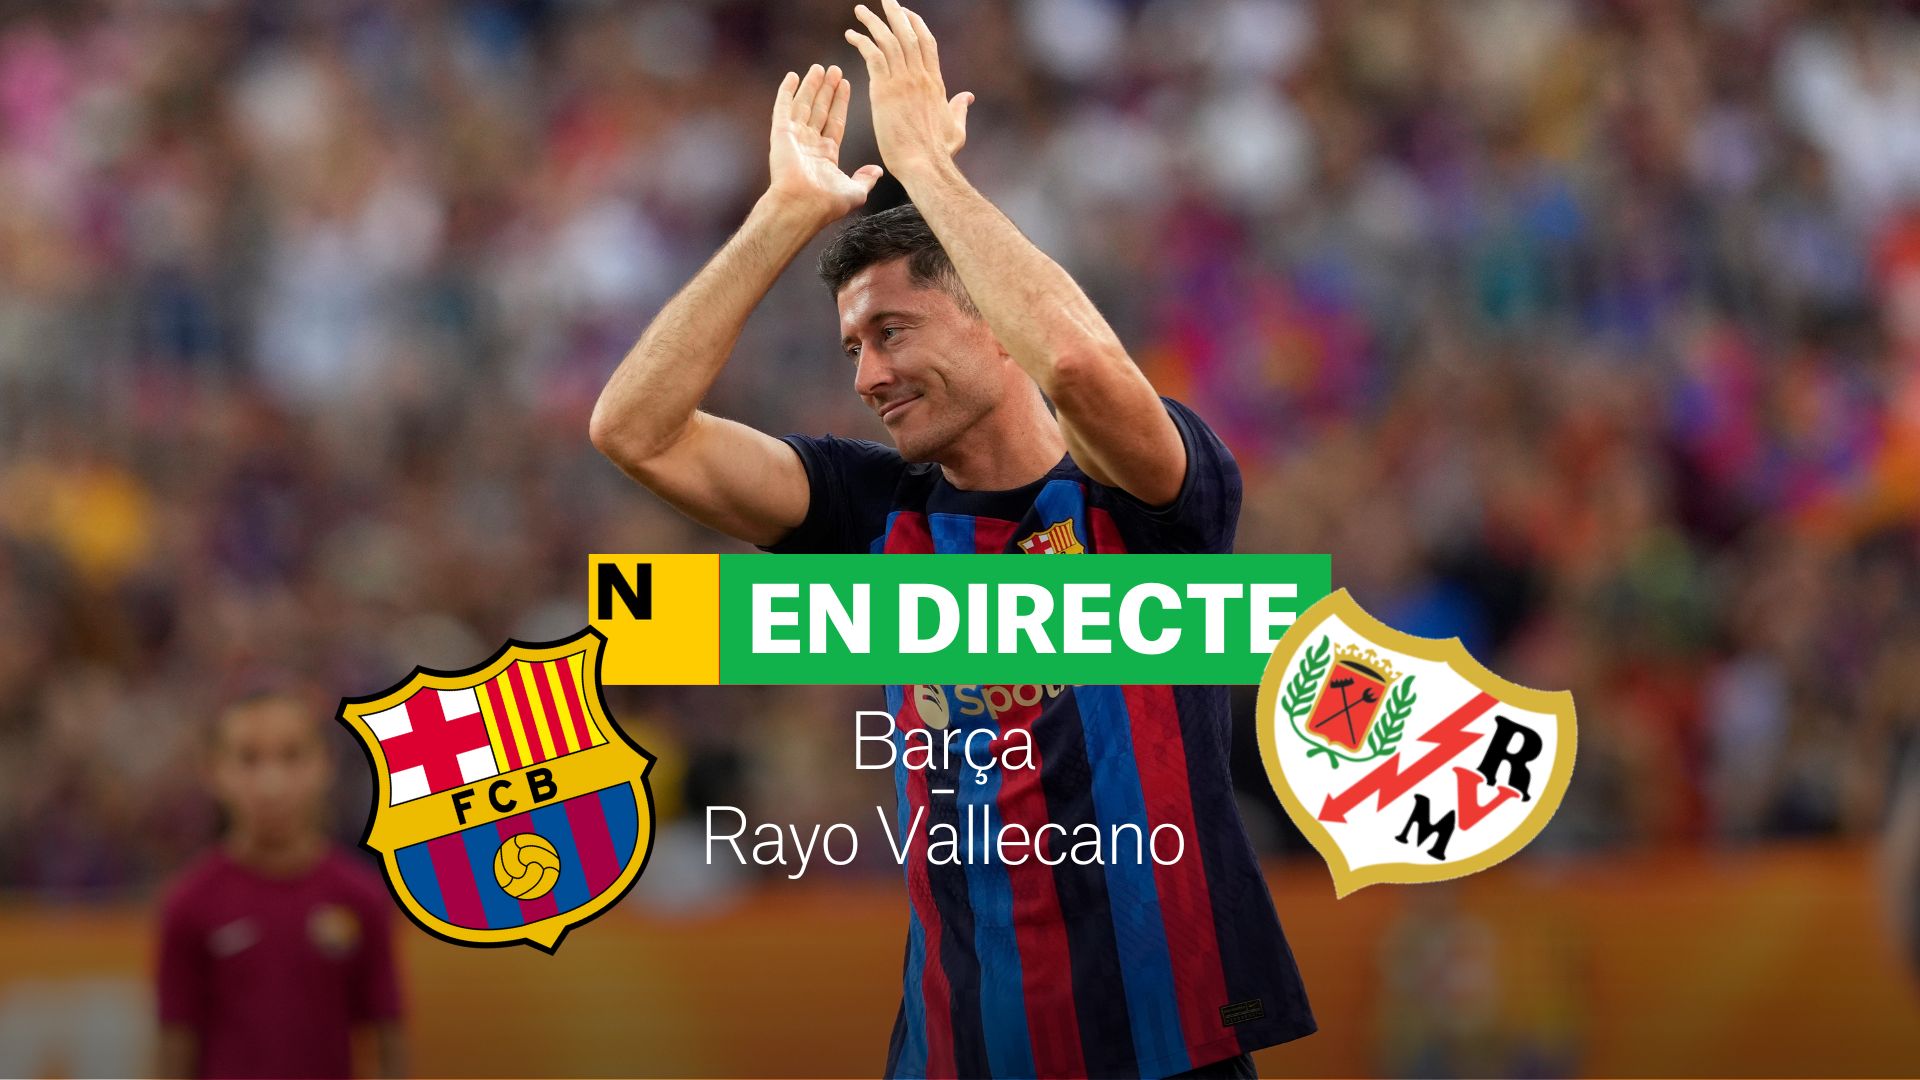 Barça-Rayo Vallecano de la Liga Santander: resultado, resumen y goles